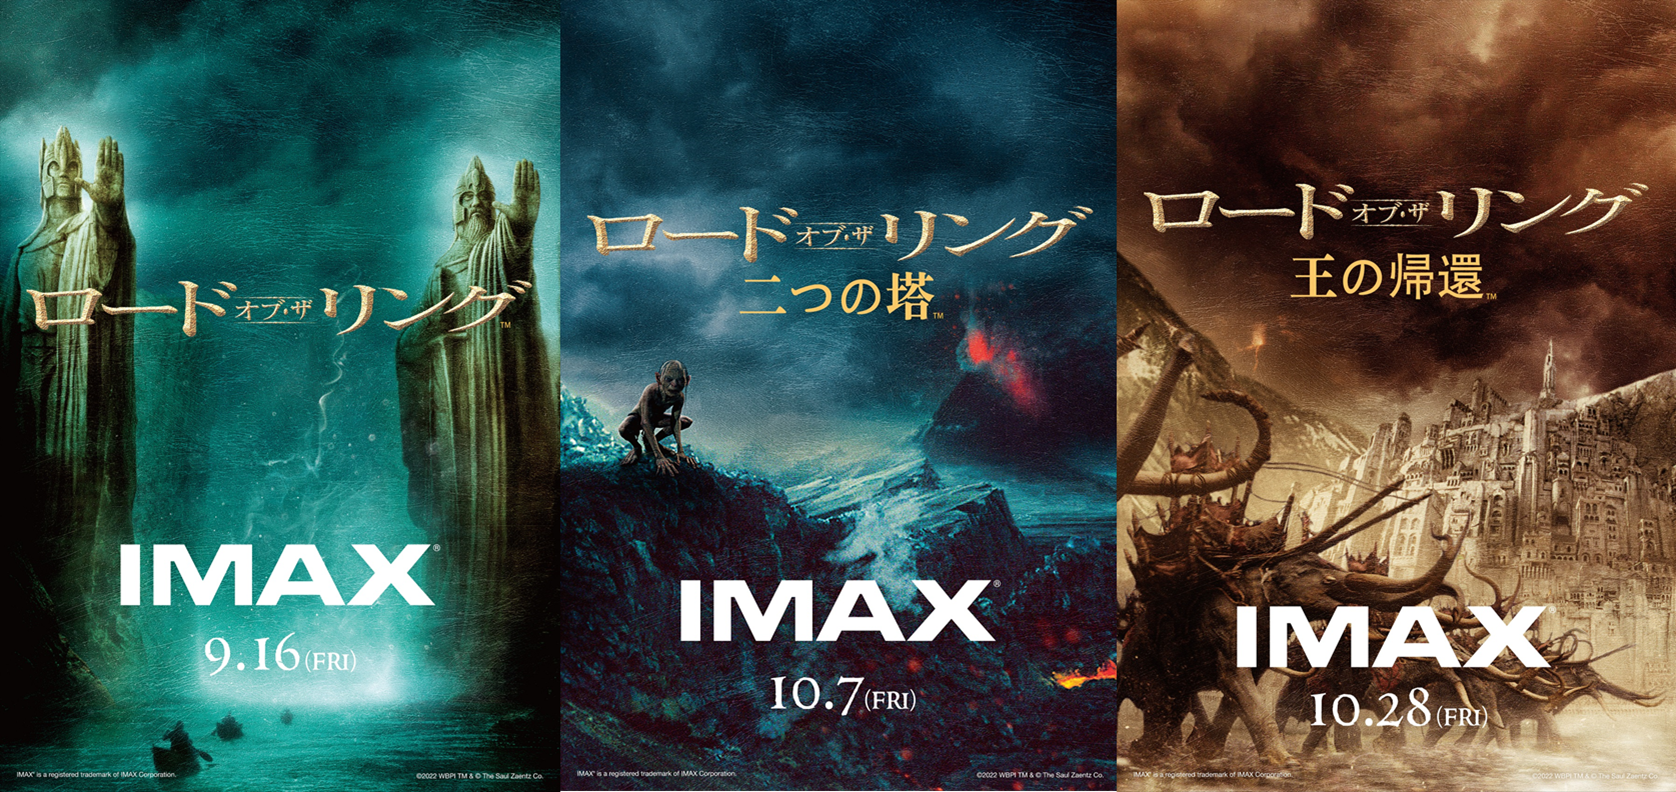 ロードオブザリング二つの塔IMAX入場者特典ポスター